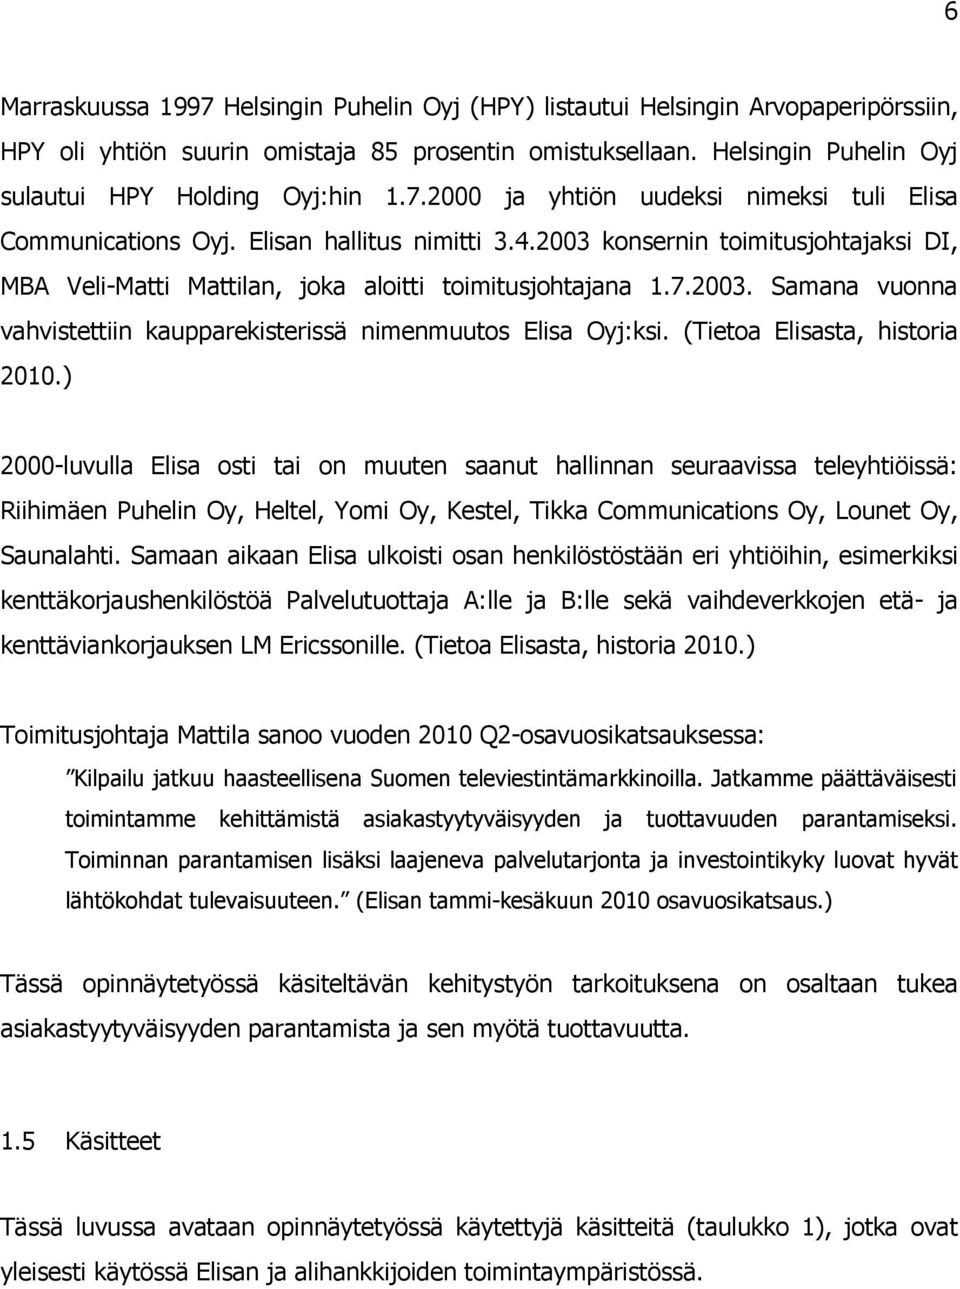 2003 konsernin toimitusjohtajaksi DI, MBA Veli-Matti Mattilan, joka aloitti toimitusjohtajana 1.7.2003. Samana vuonna vahvistettiin kaupparekisterissä nimenmuutos Elisa Oyj:ksi.